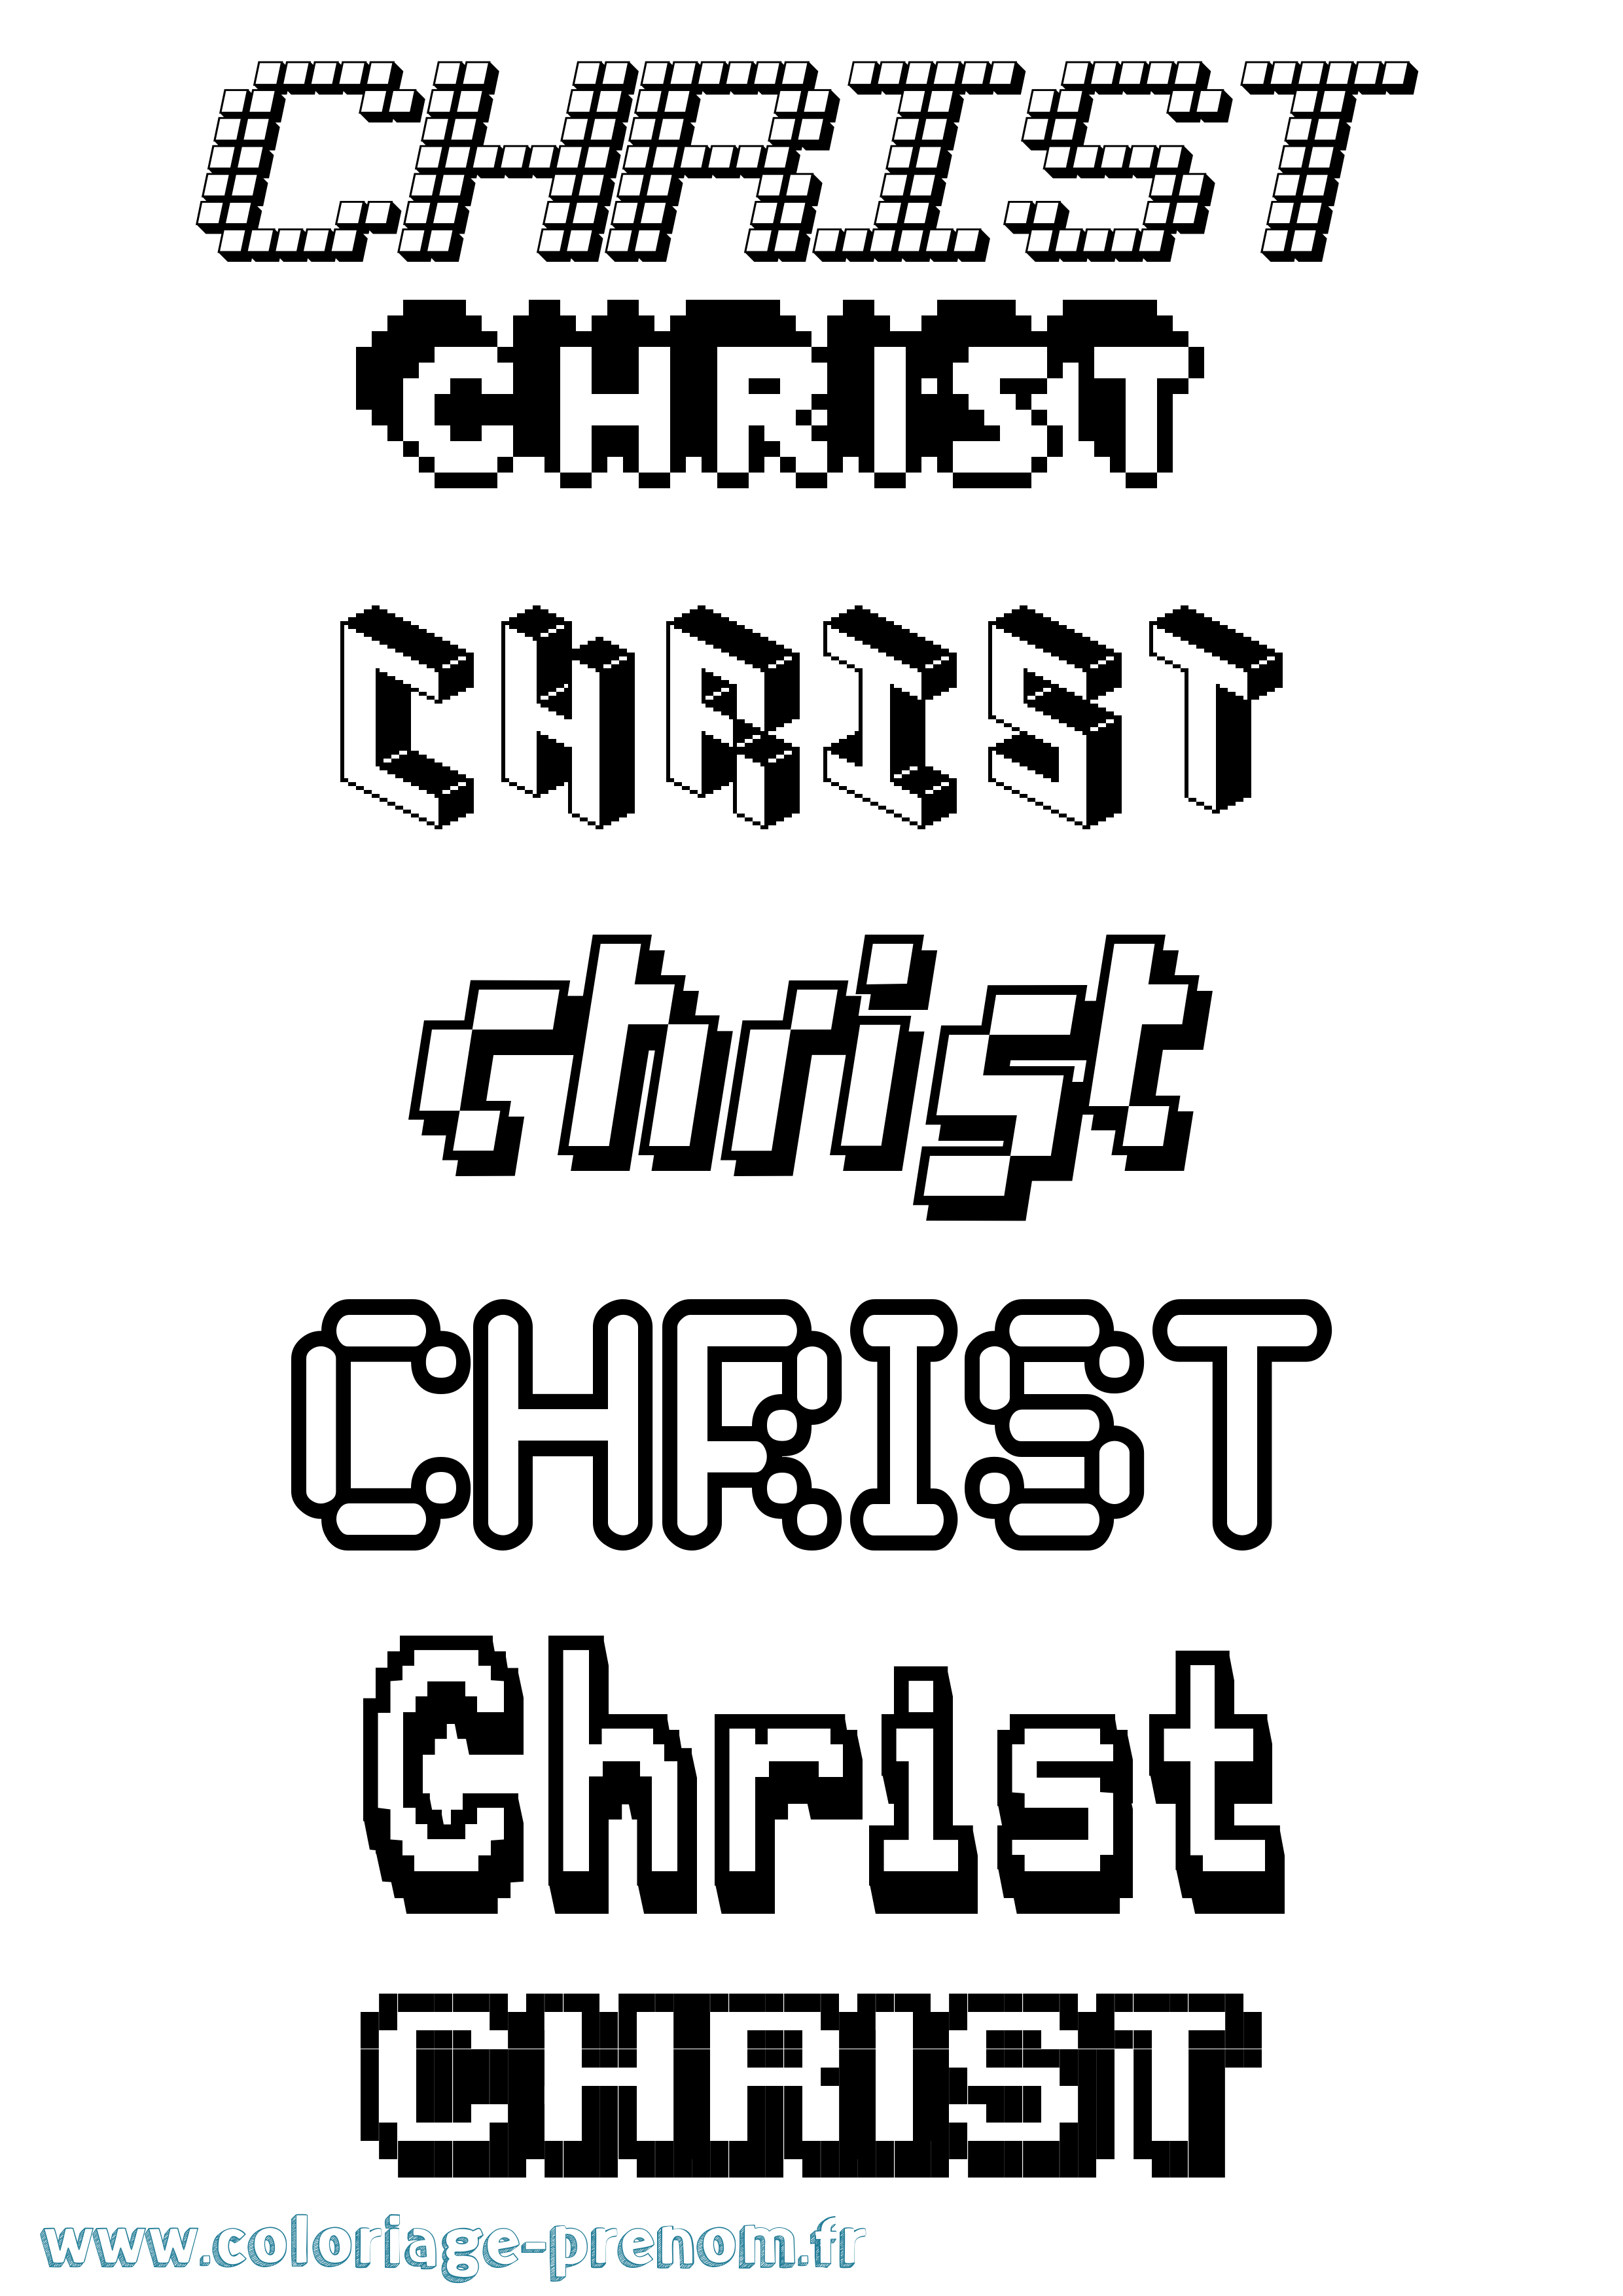 Coloriage prénom Christ Pixel